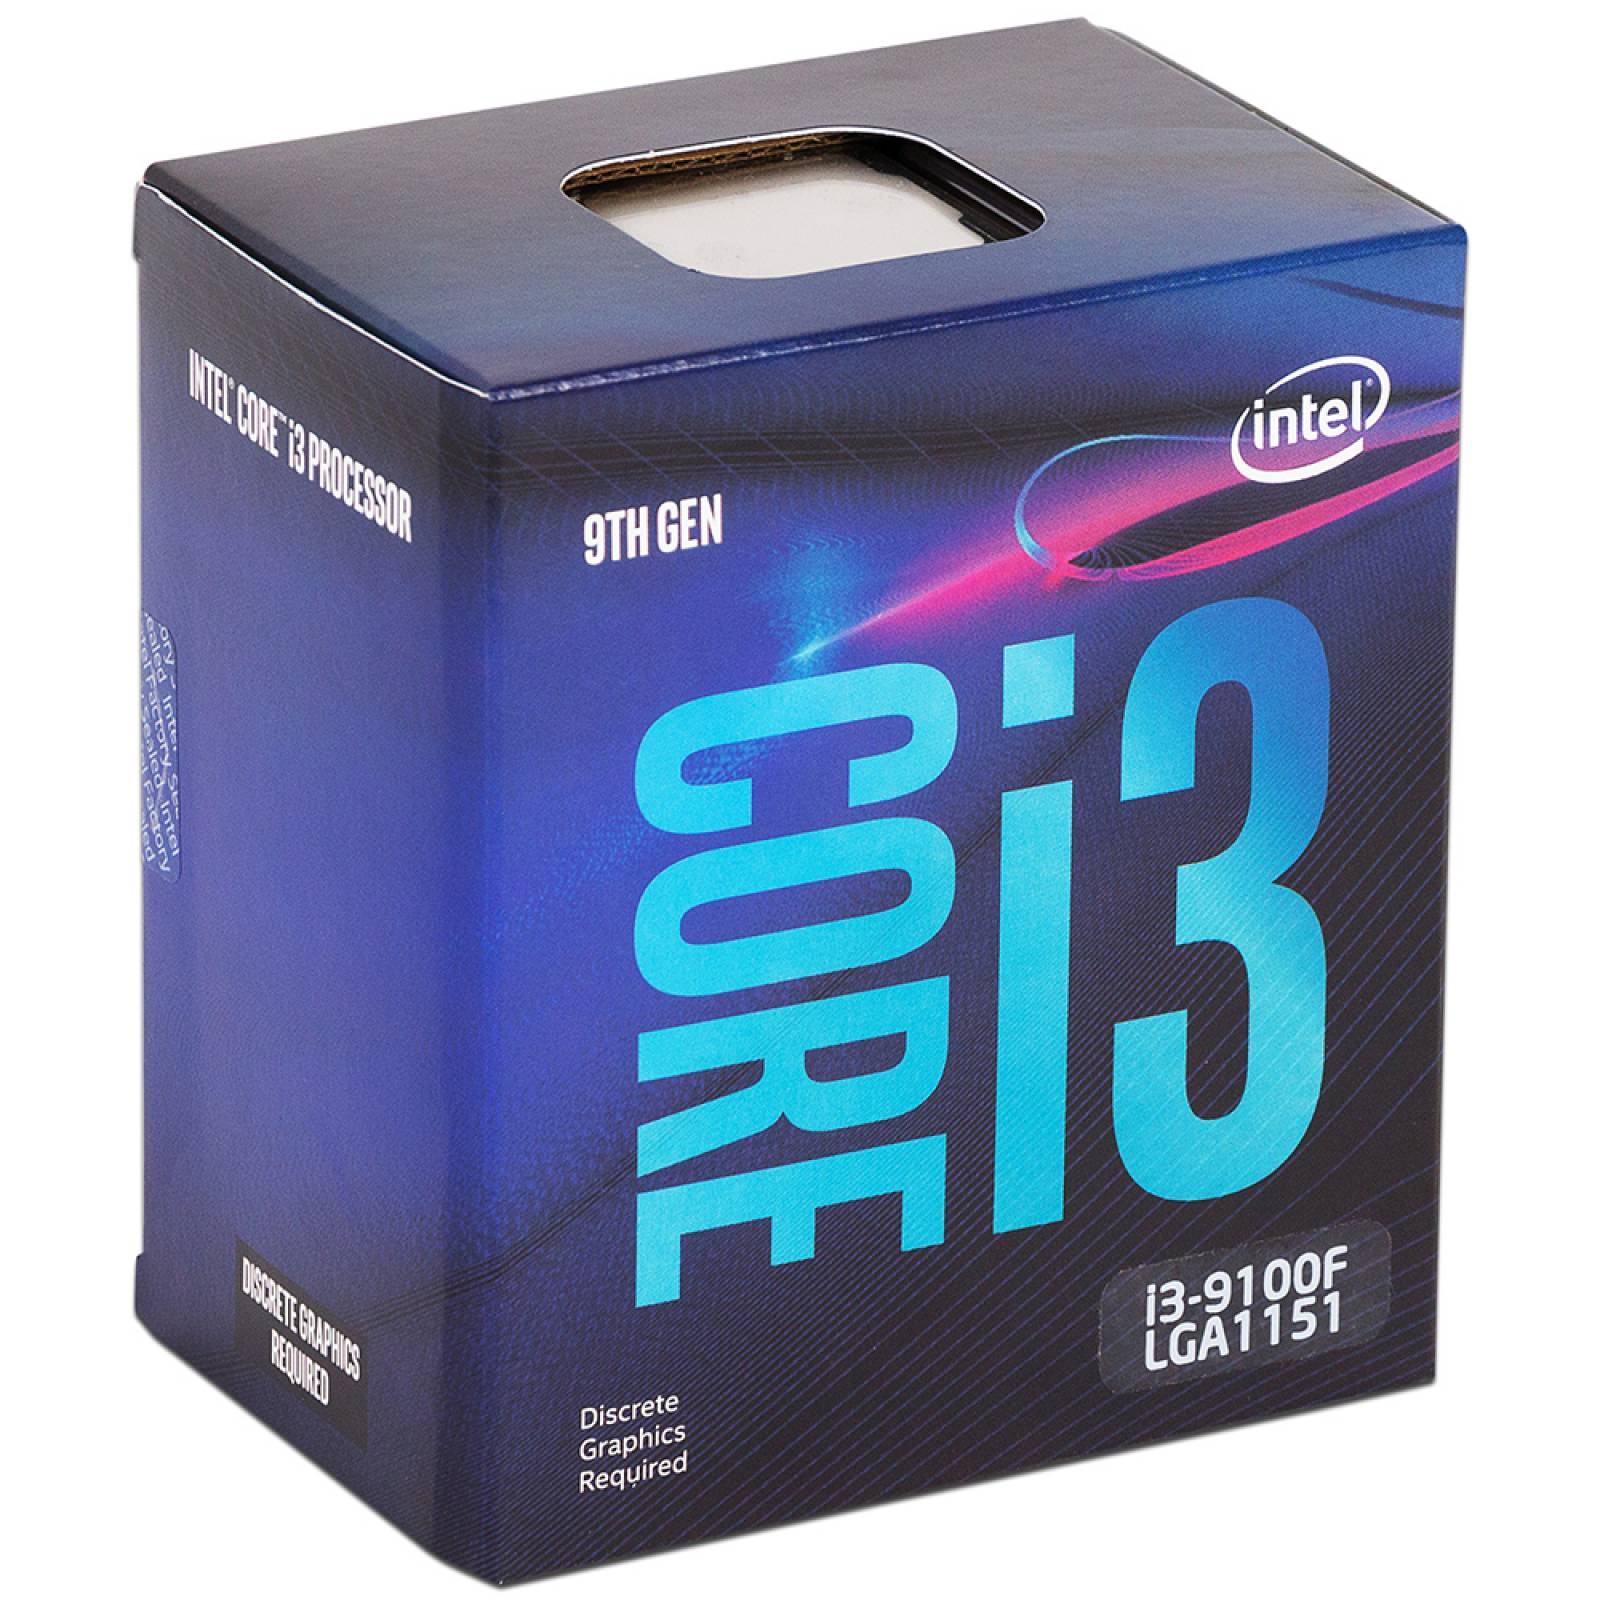 Procesador Intel Core i3 9100F de Novena generaciÃ³n 3.60 GHz hasta 4.20 GHz Socket 1151 CachÃ© 6MB QuadCore 14nm No incluye grÃ¡ficos integrados